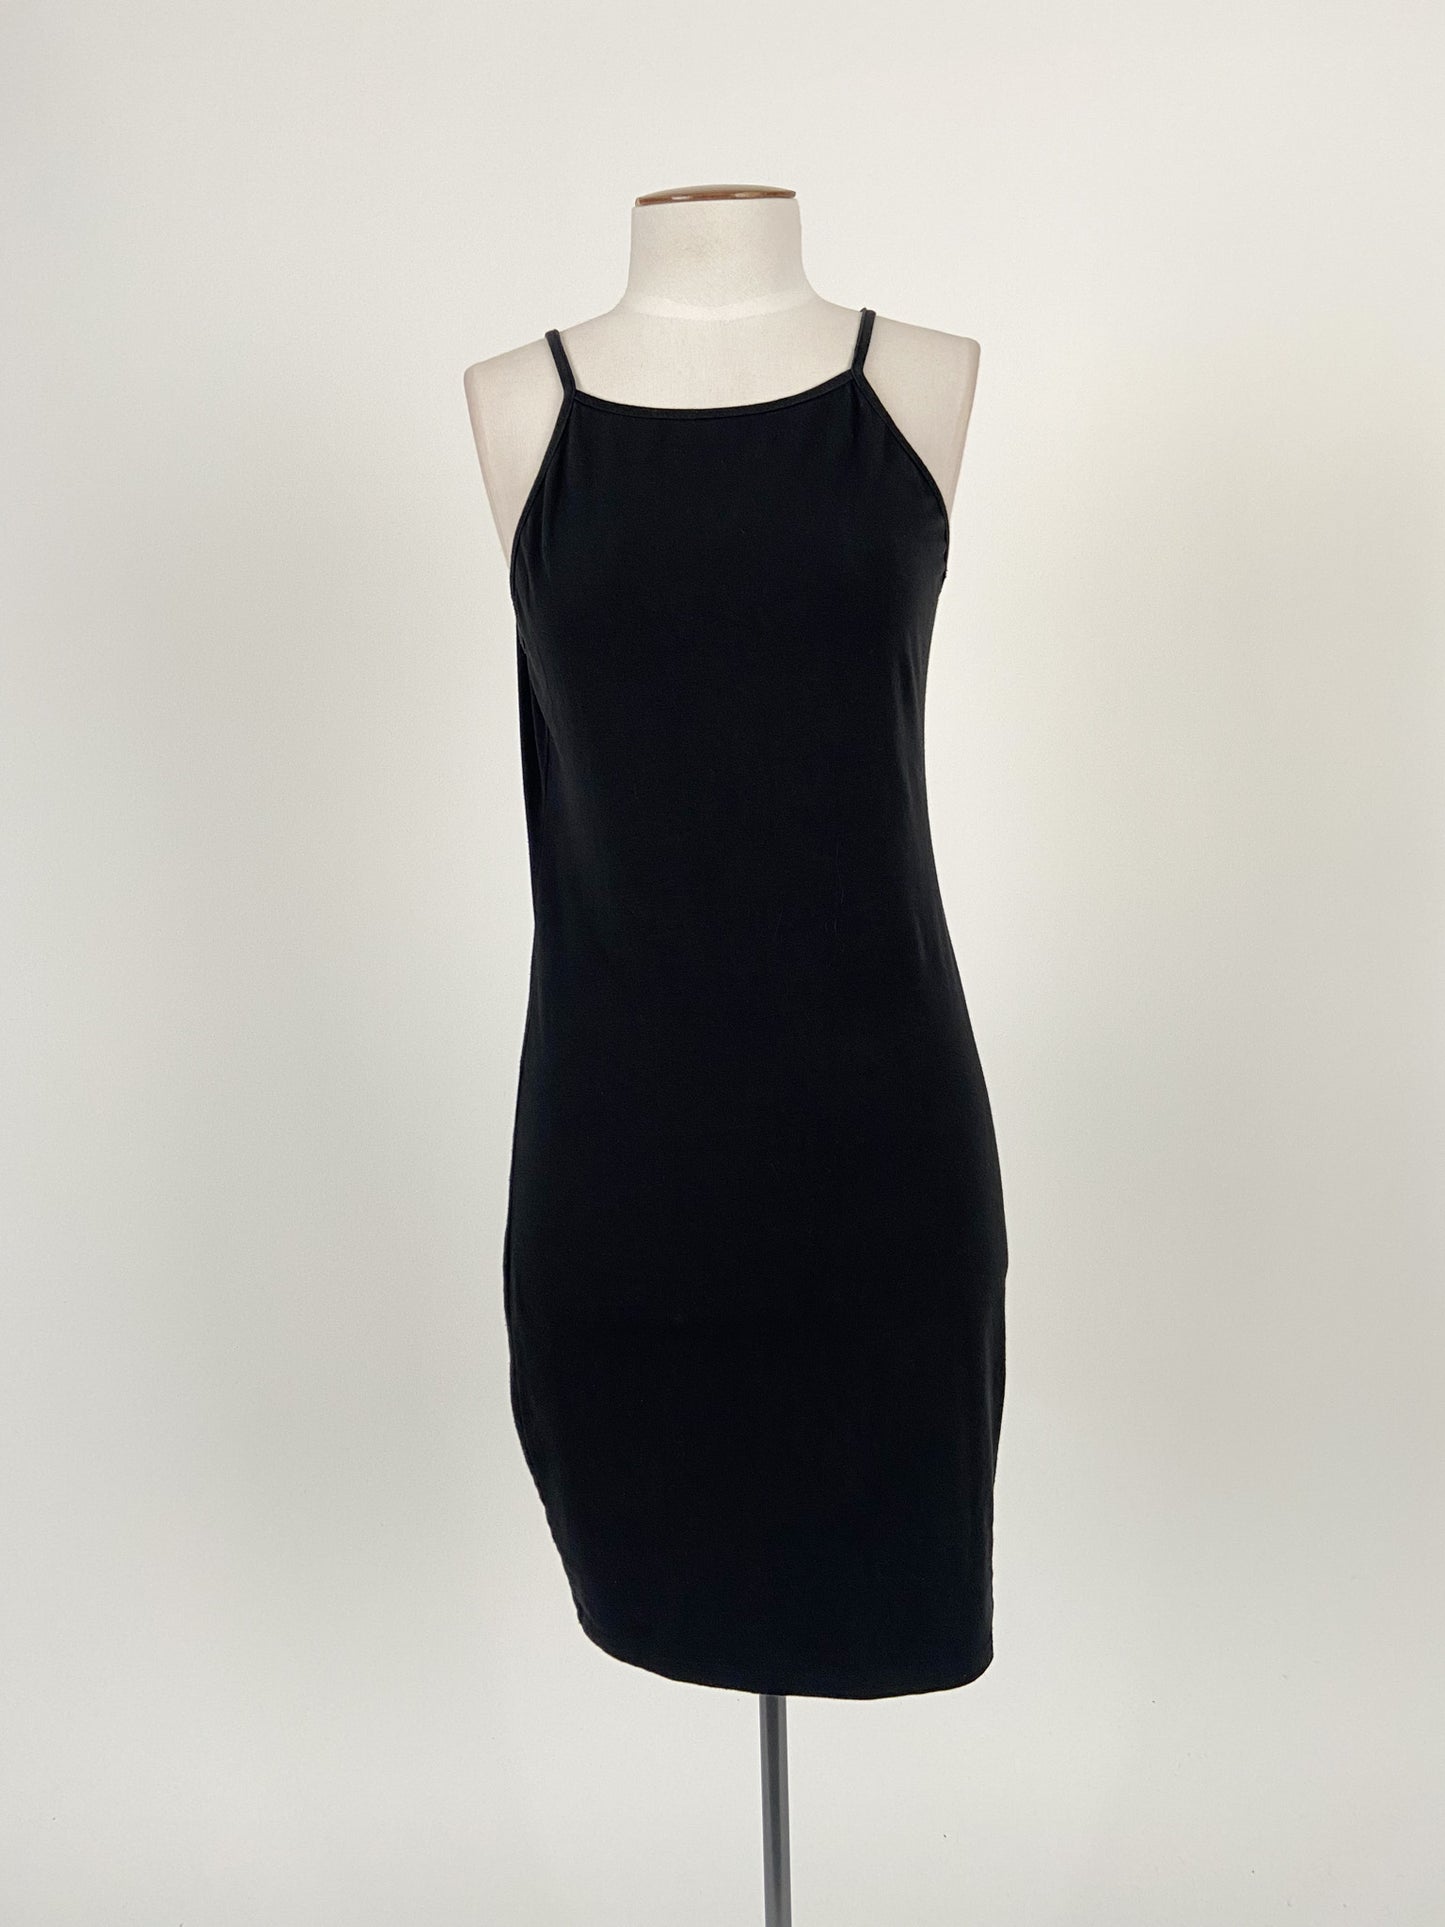 Mirrou | Black Cocktail/Formal Dress | Size M